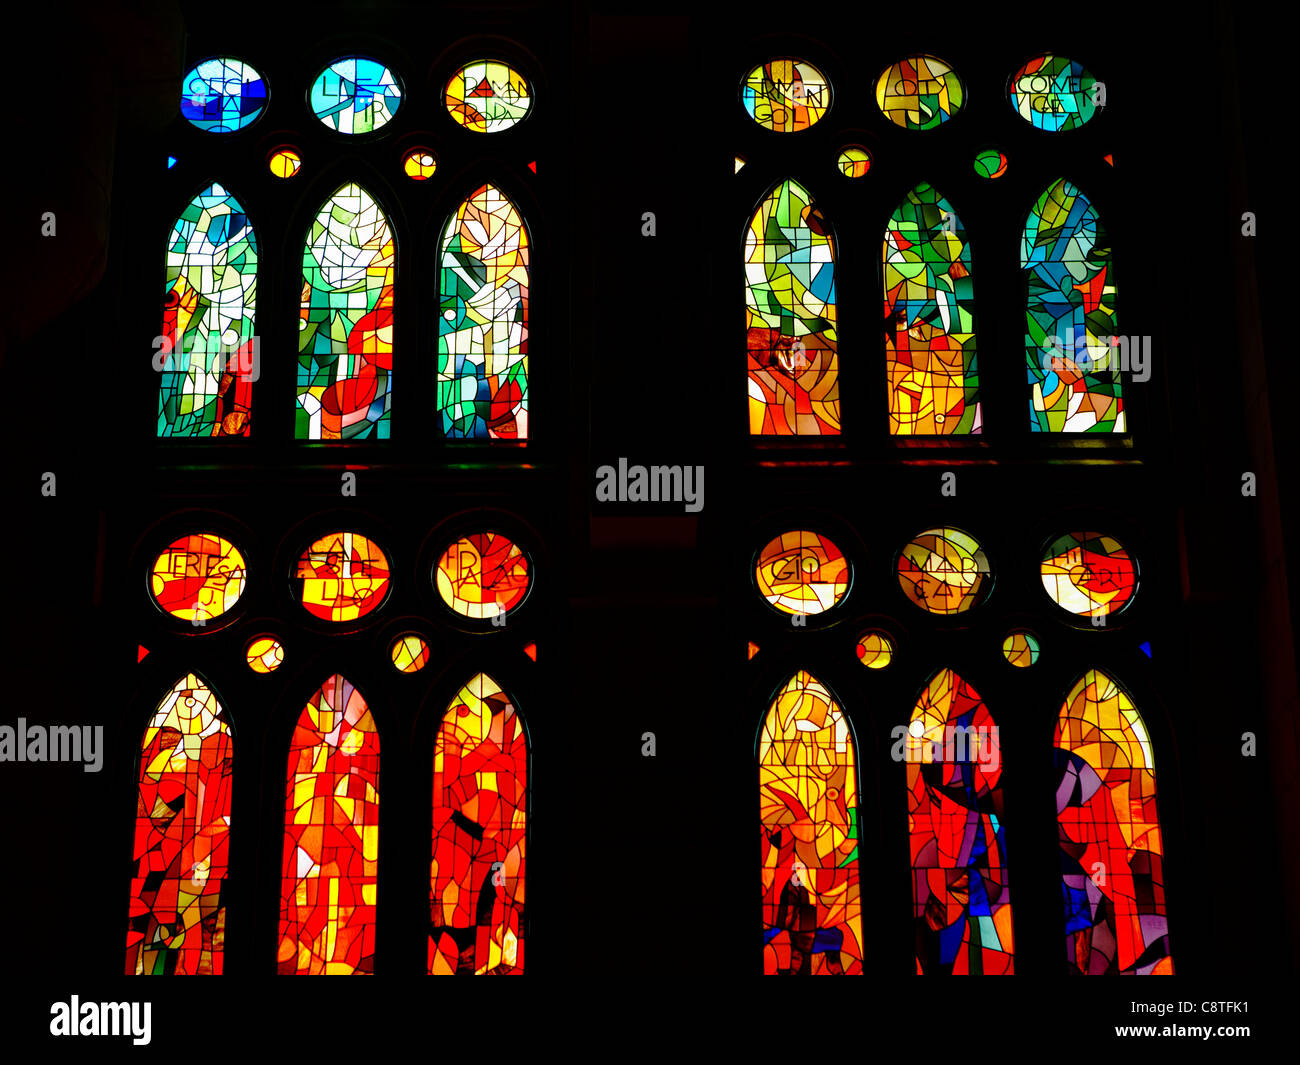 Sagrada familia – -Bildmaterial hoher glasmalerei Alamy in Auflösung und -Fotos